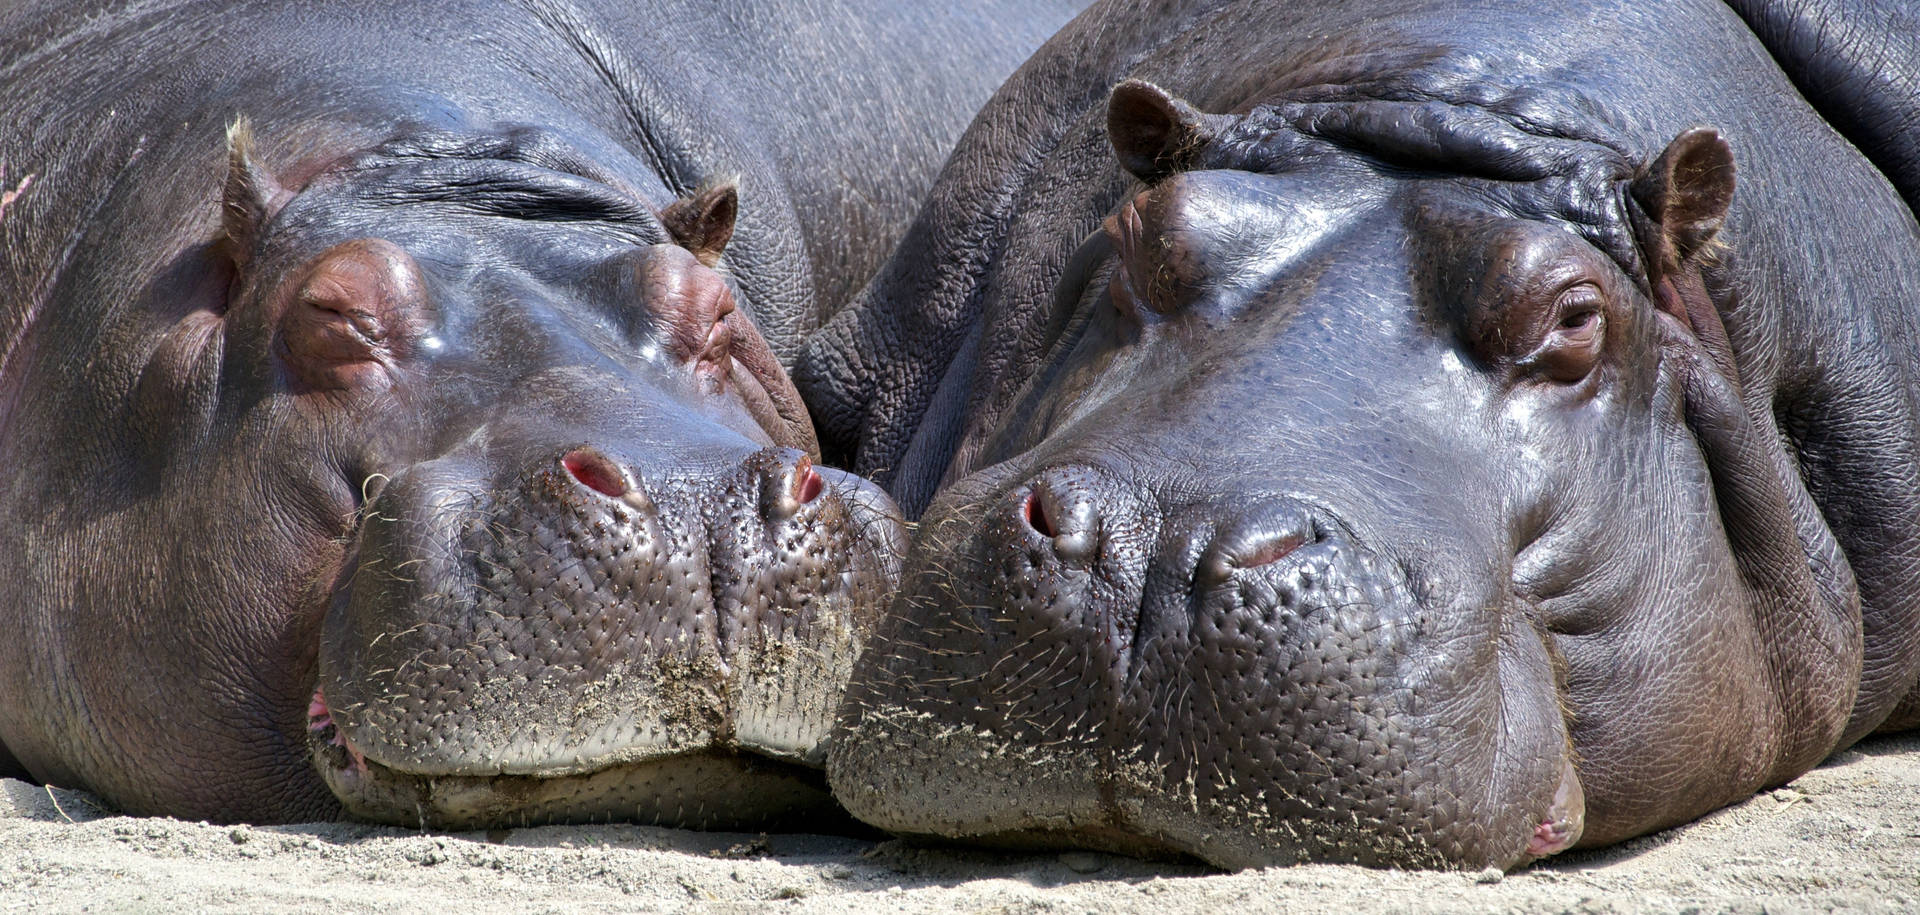 Two Sleepy Hippopotamuses Background